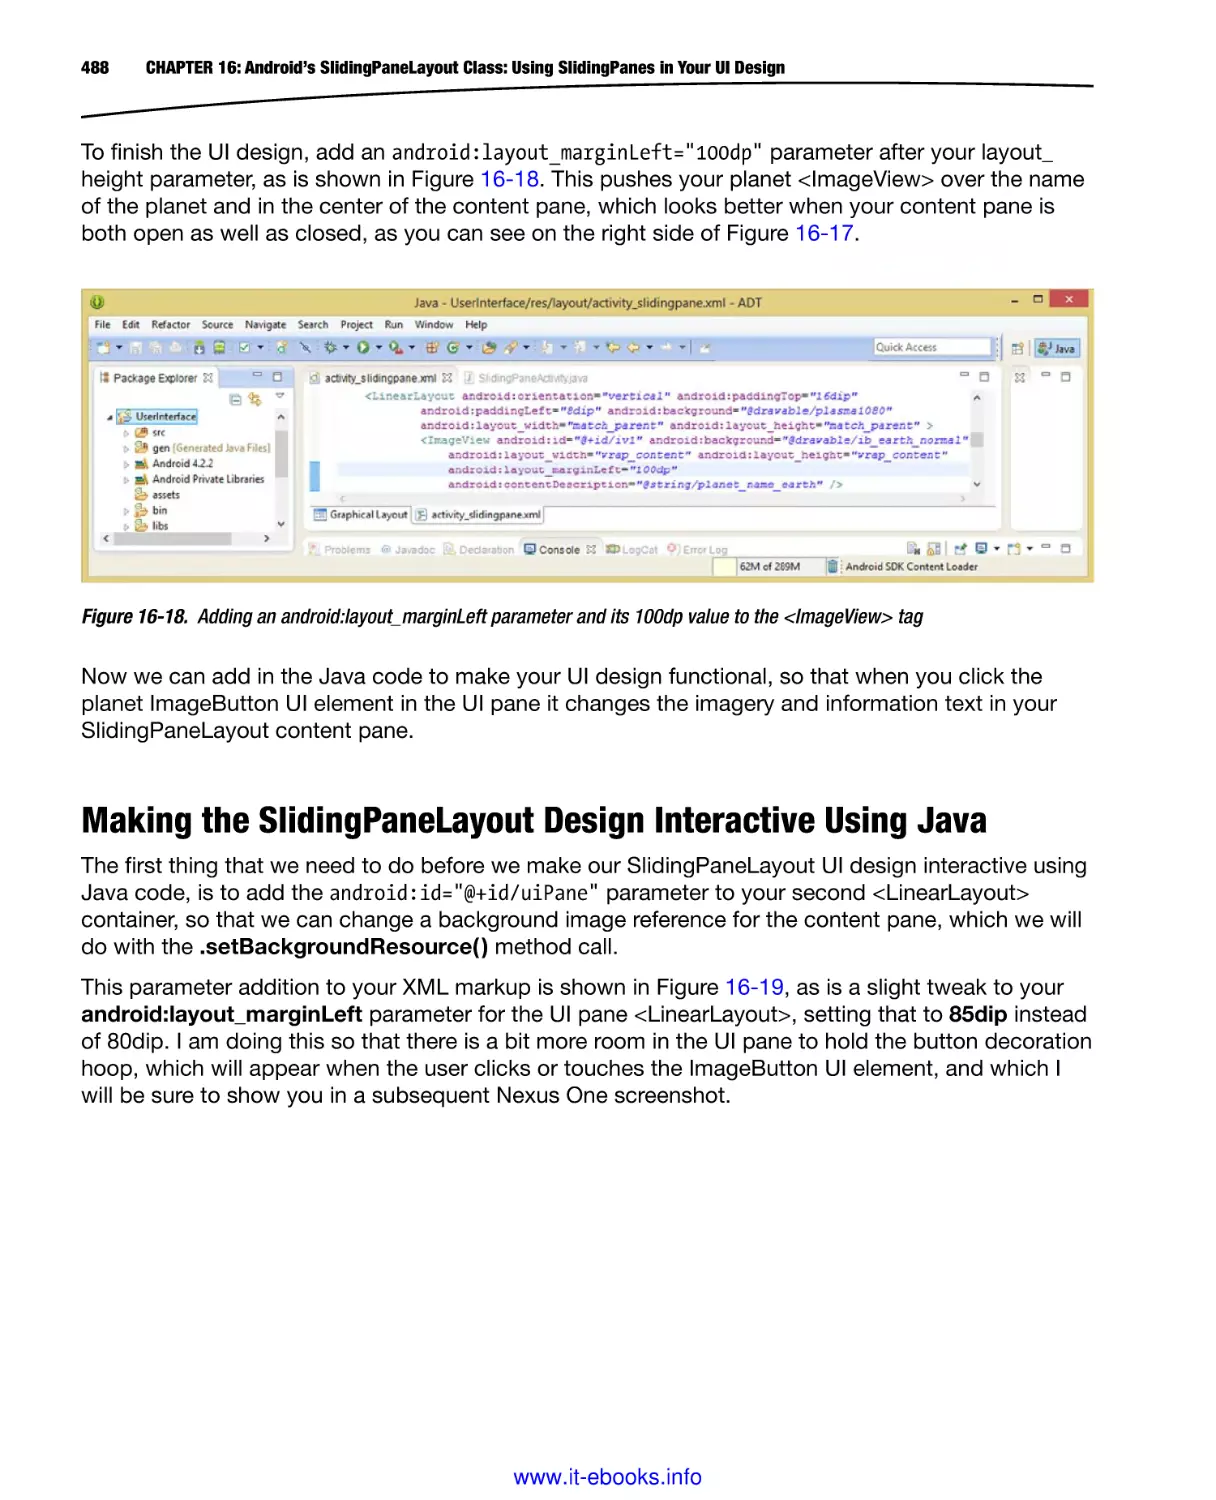 Making the SlidingPaneLayout Design Interactive Using Java